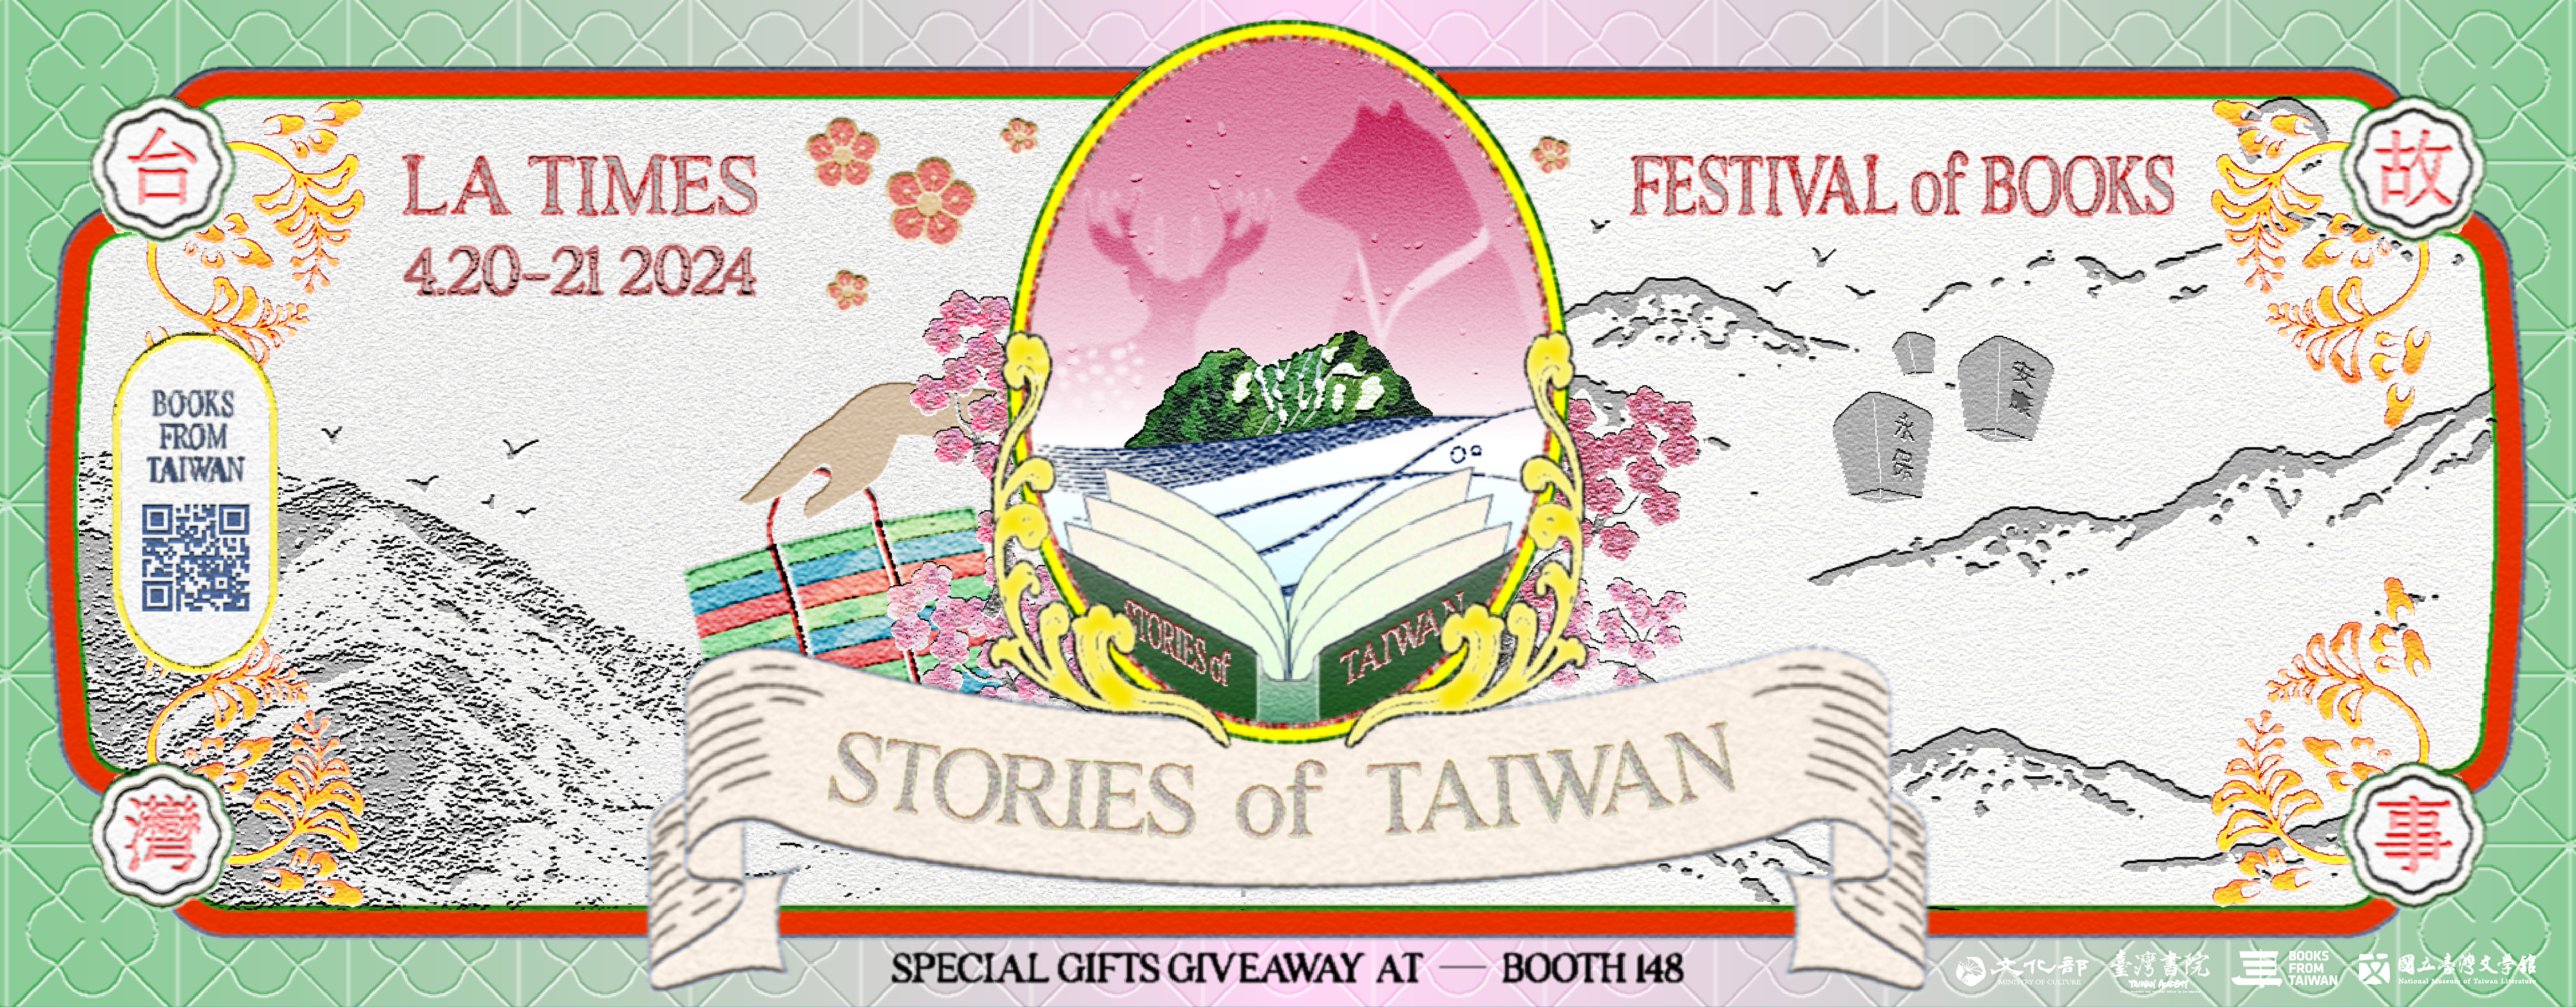 南加大周末《洛时》书展 七部“台湾故事”登场